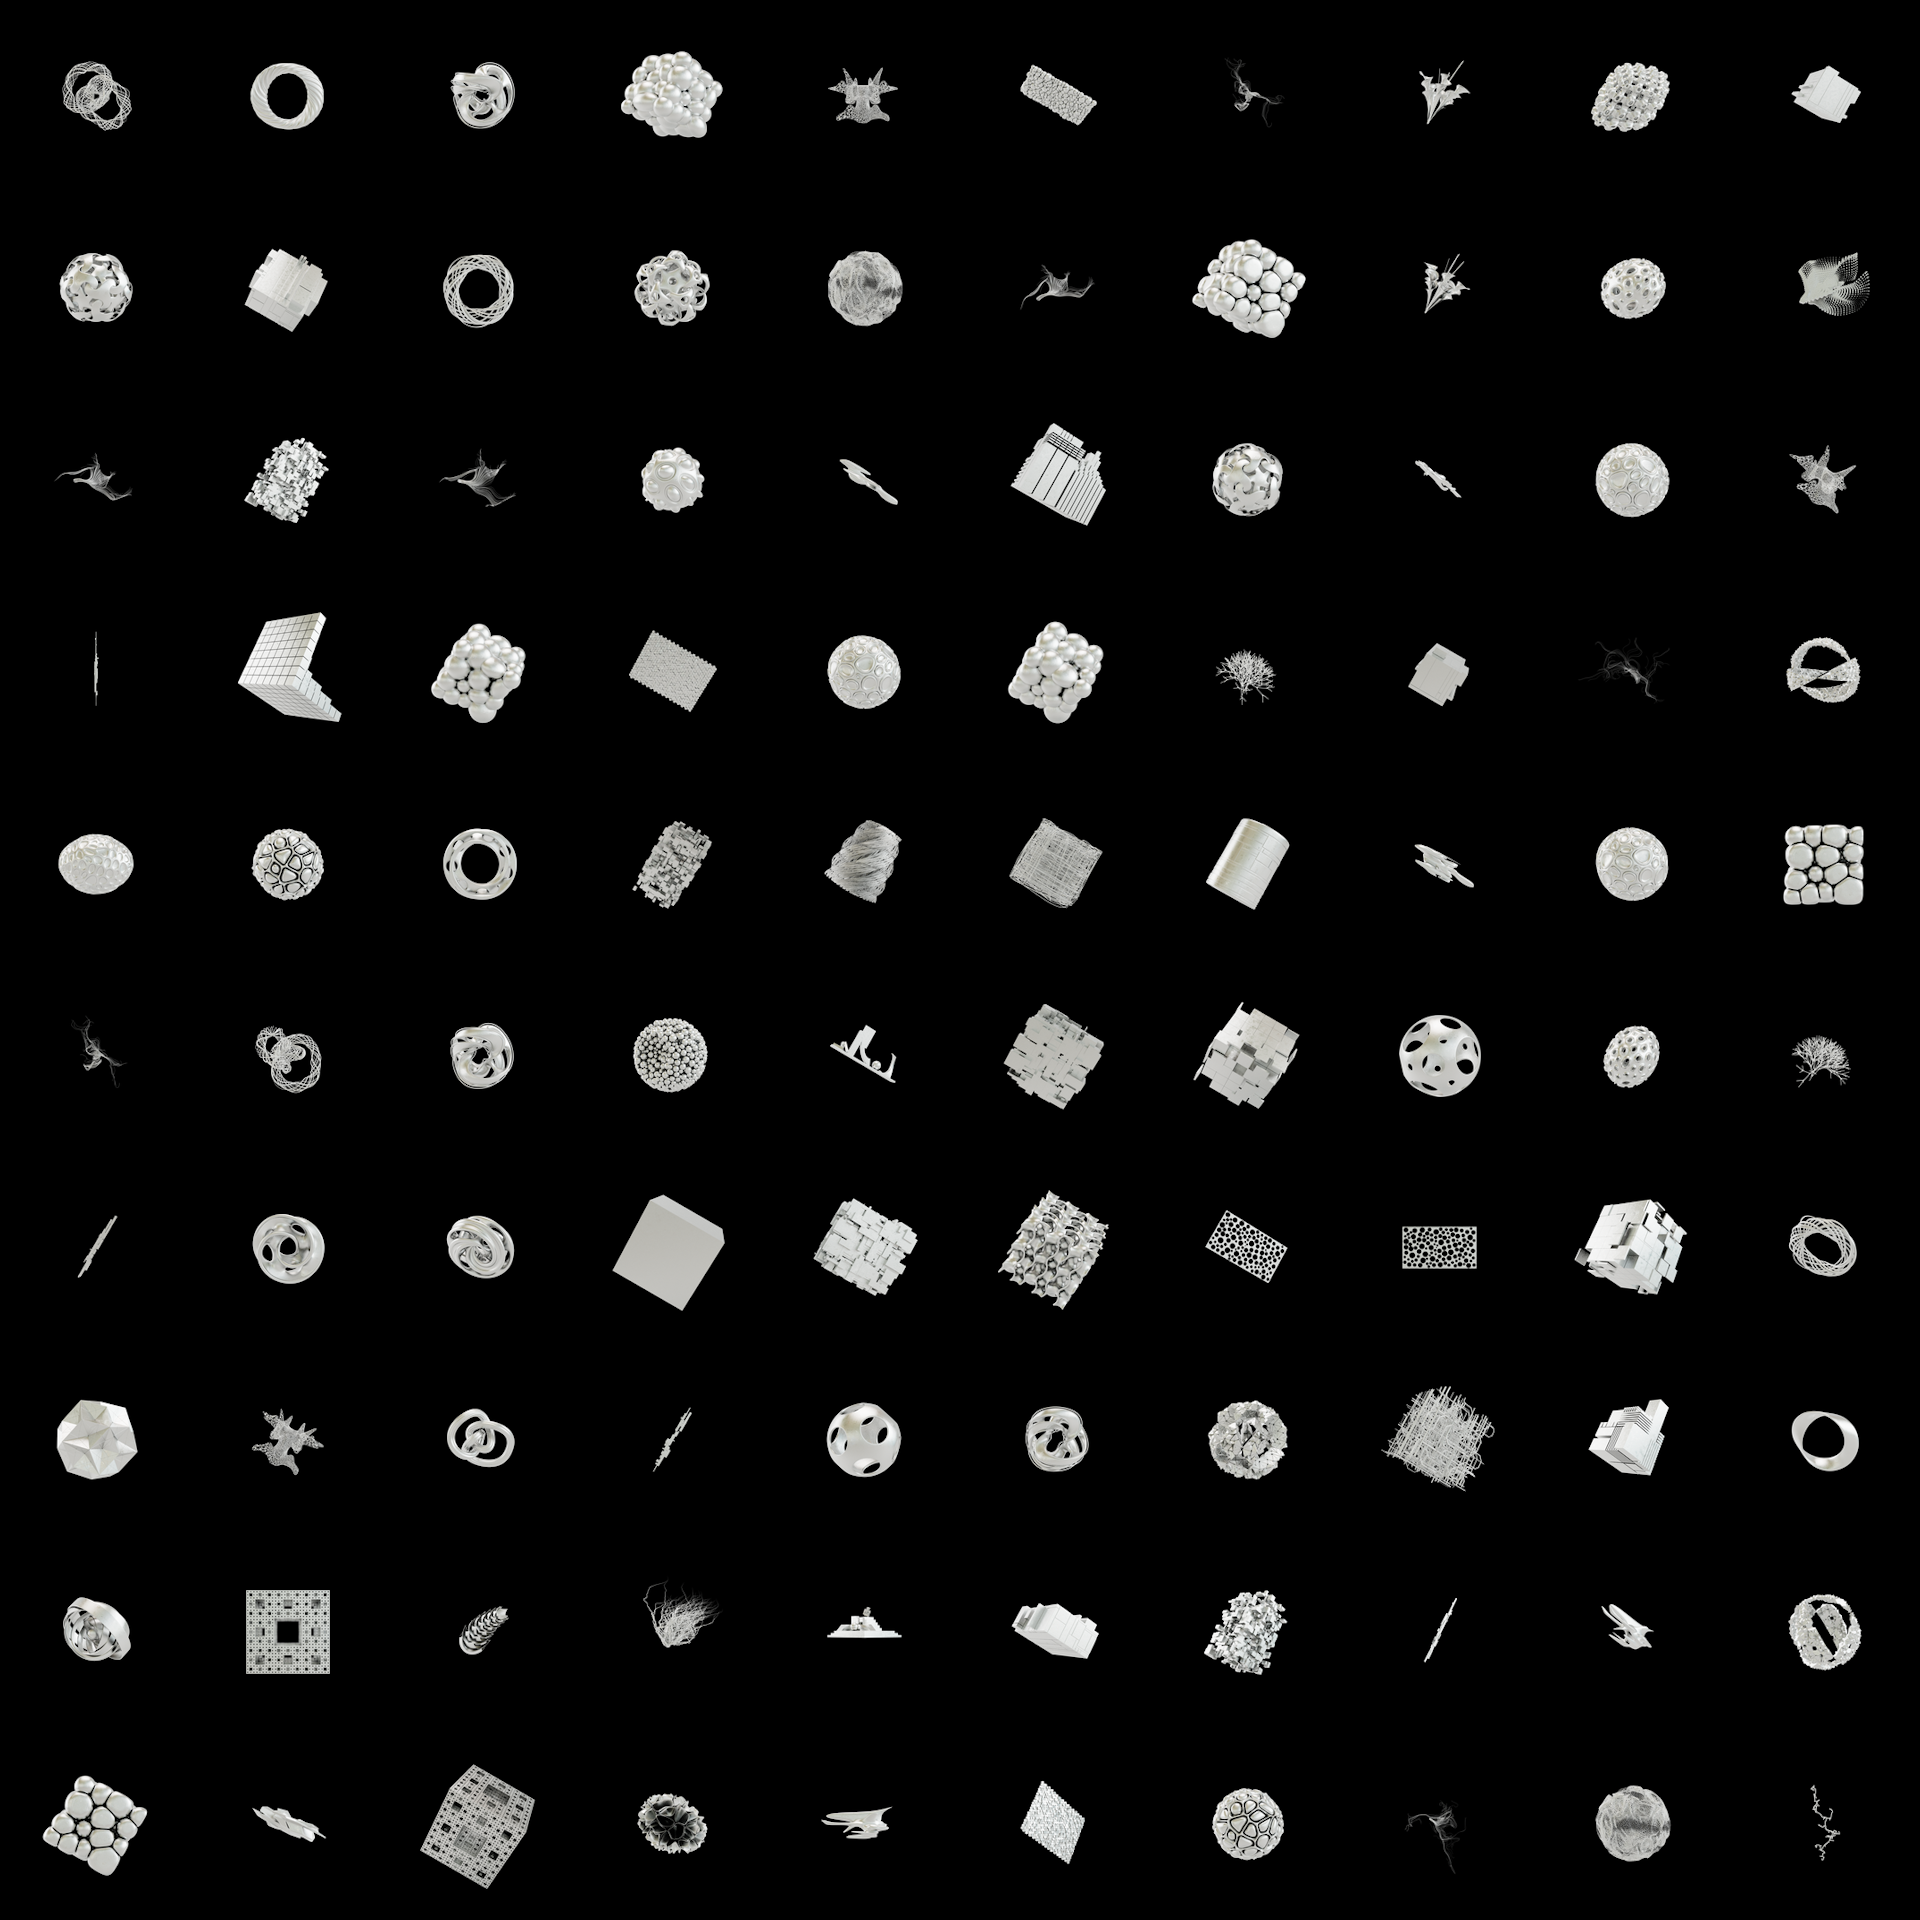 The Bundle - cmp.subtle-imperfections/99 tile image 1